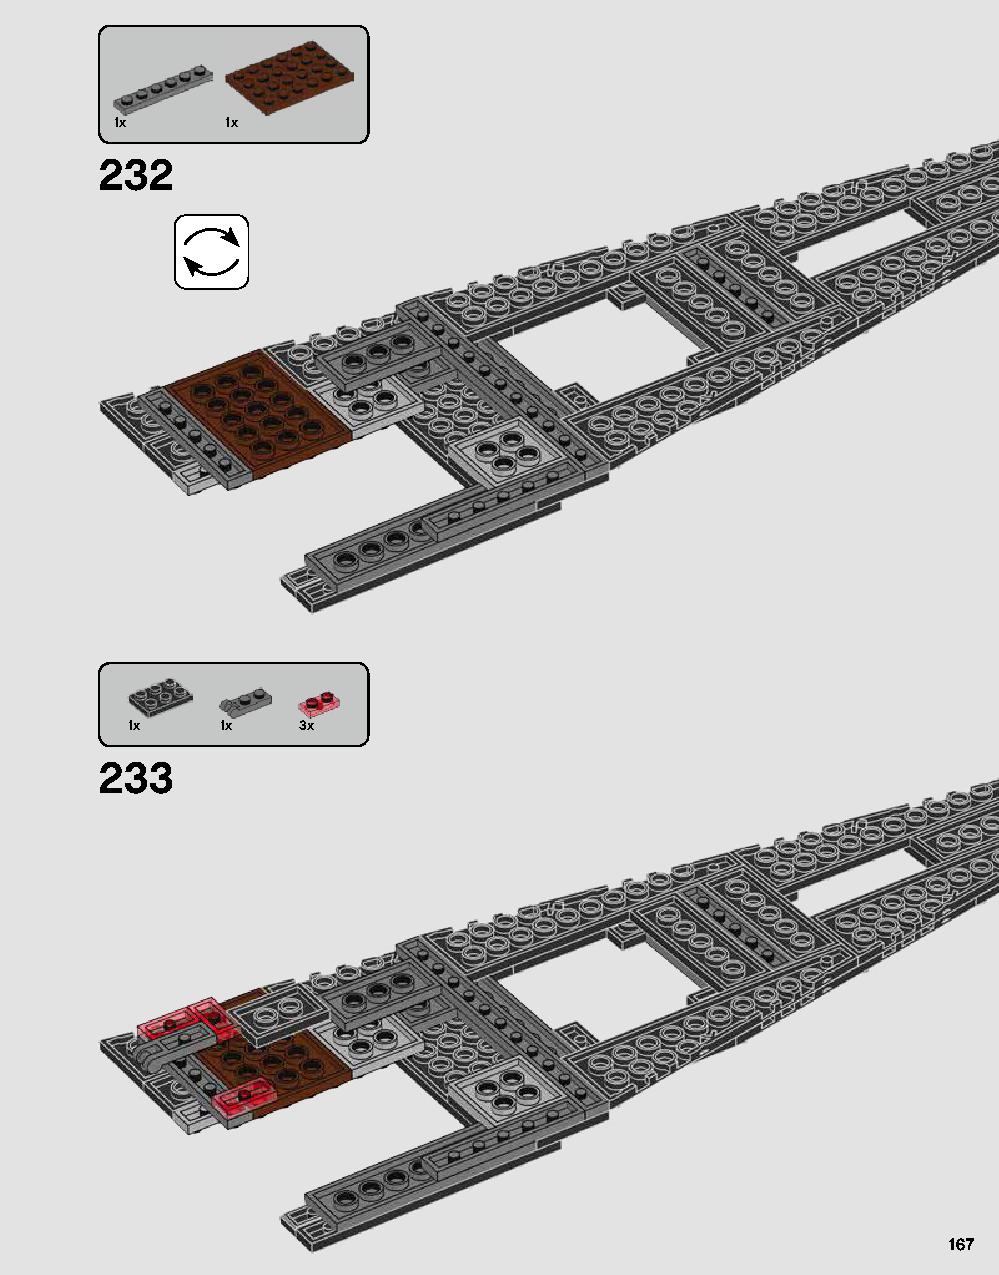 ダース・ベイダーの城 75251 レゴの商品情報 レゴの説明書・組立方法 167 page